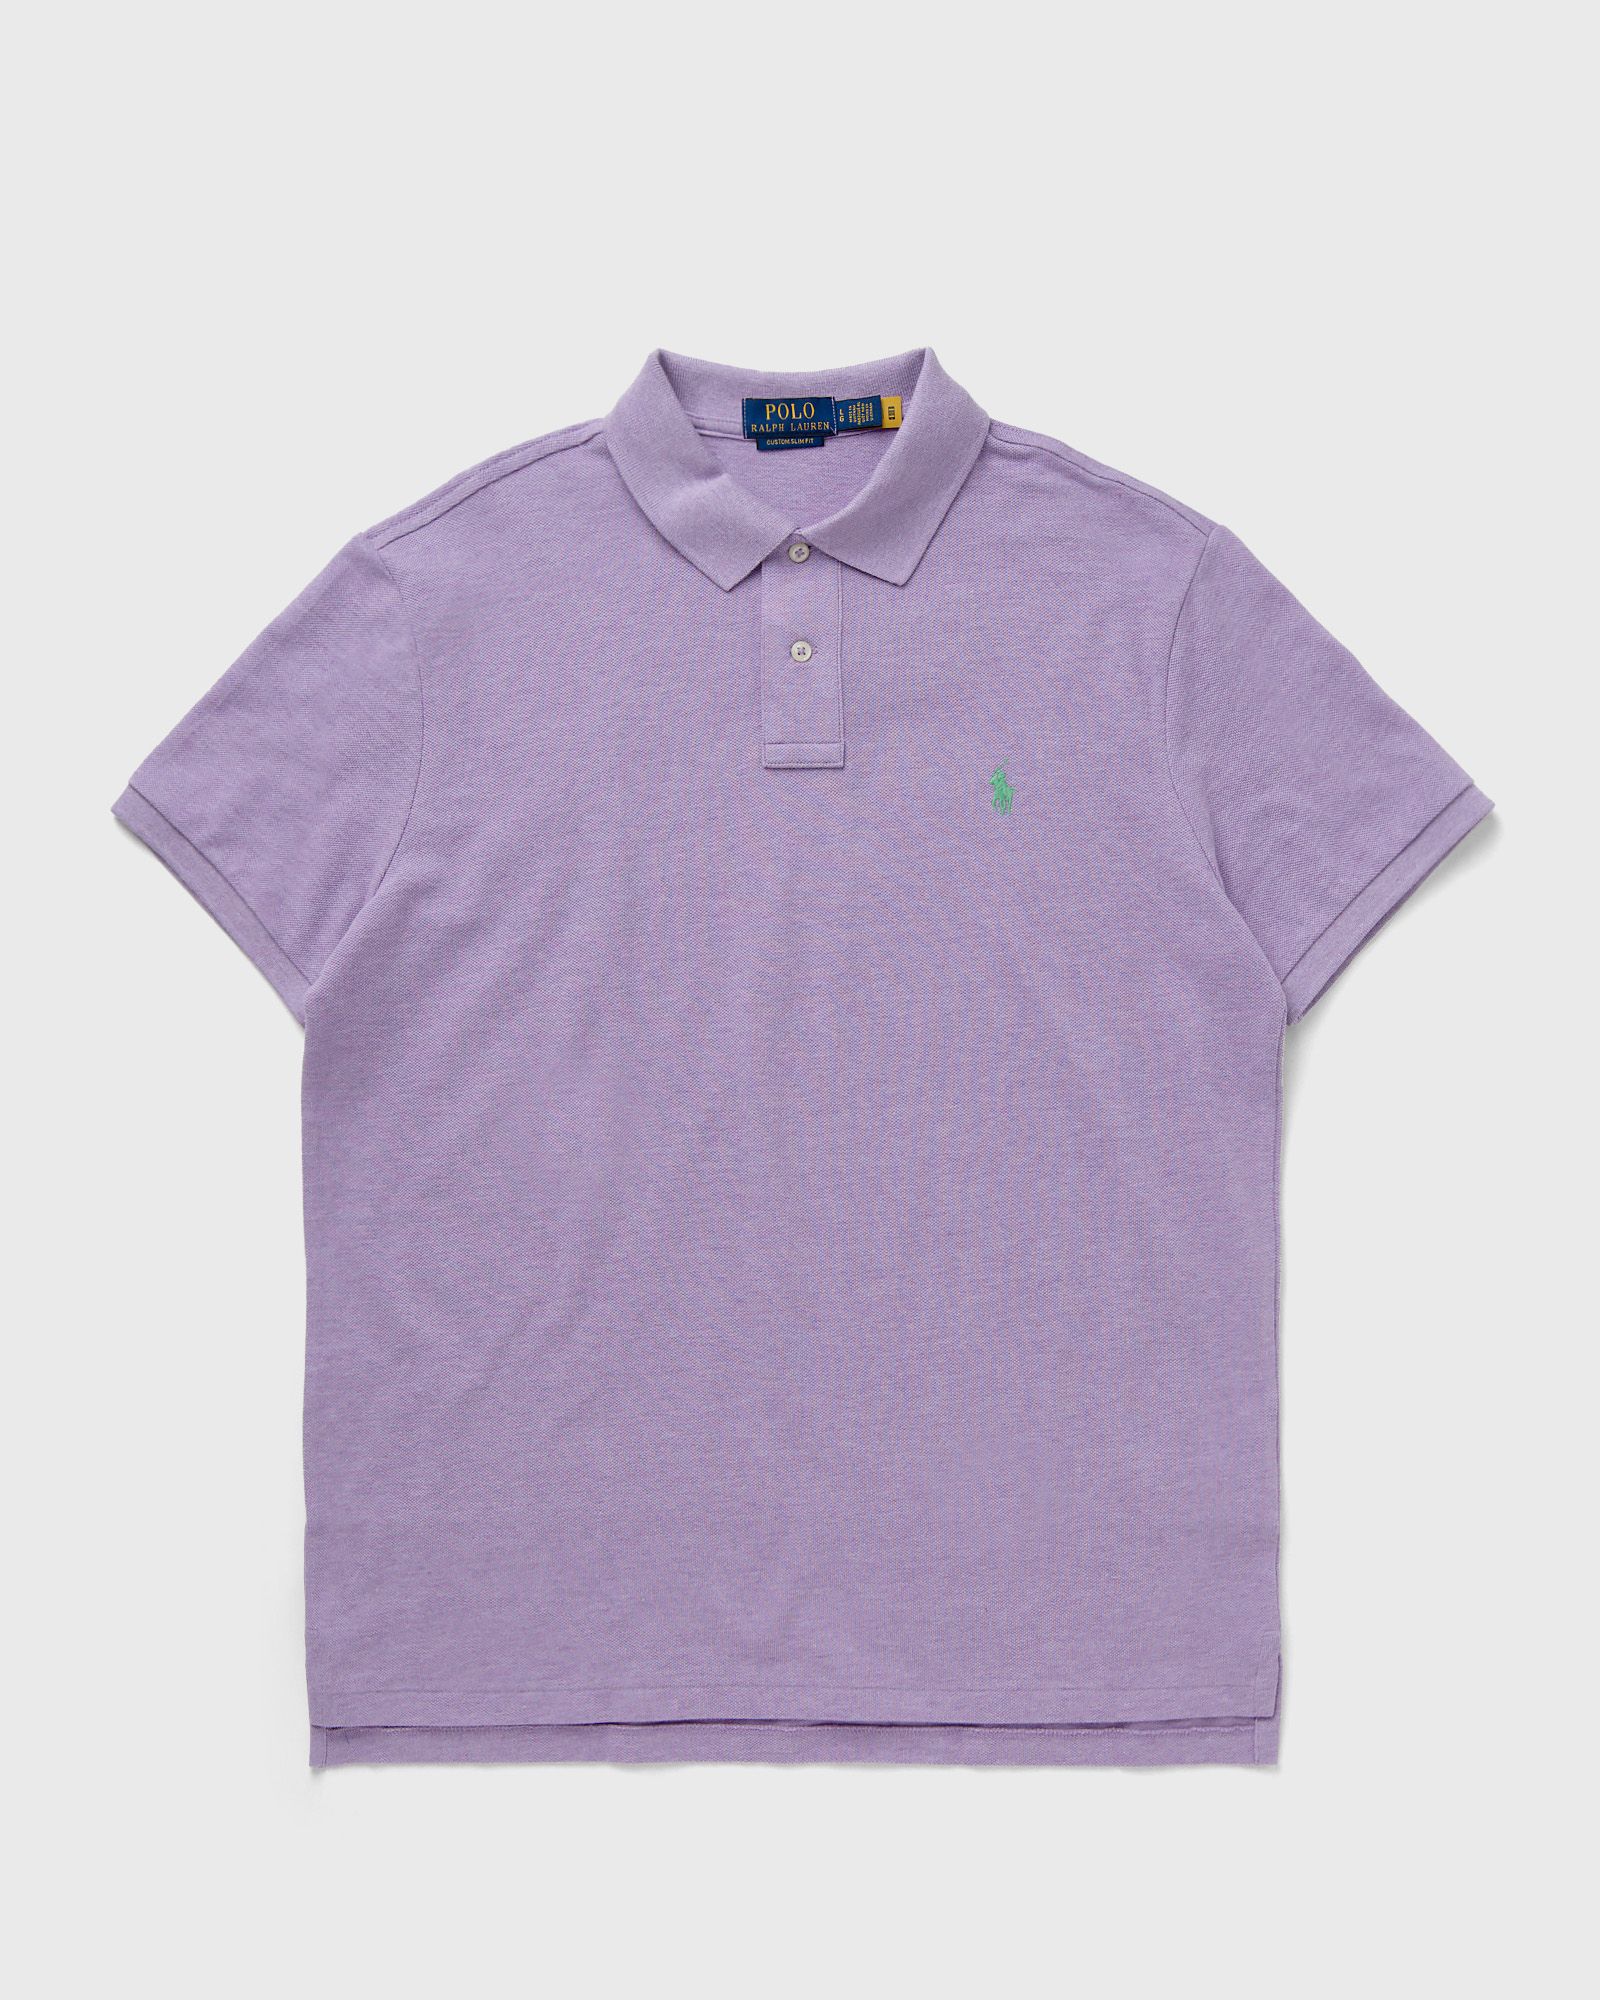 Polo Ralph Lauren - short sleeve-knit men polos purple in größe:l